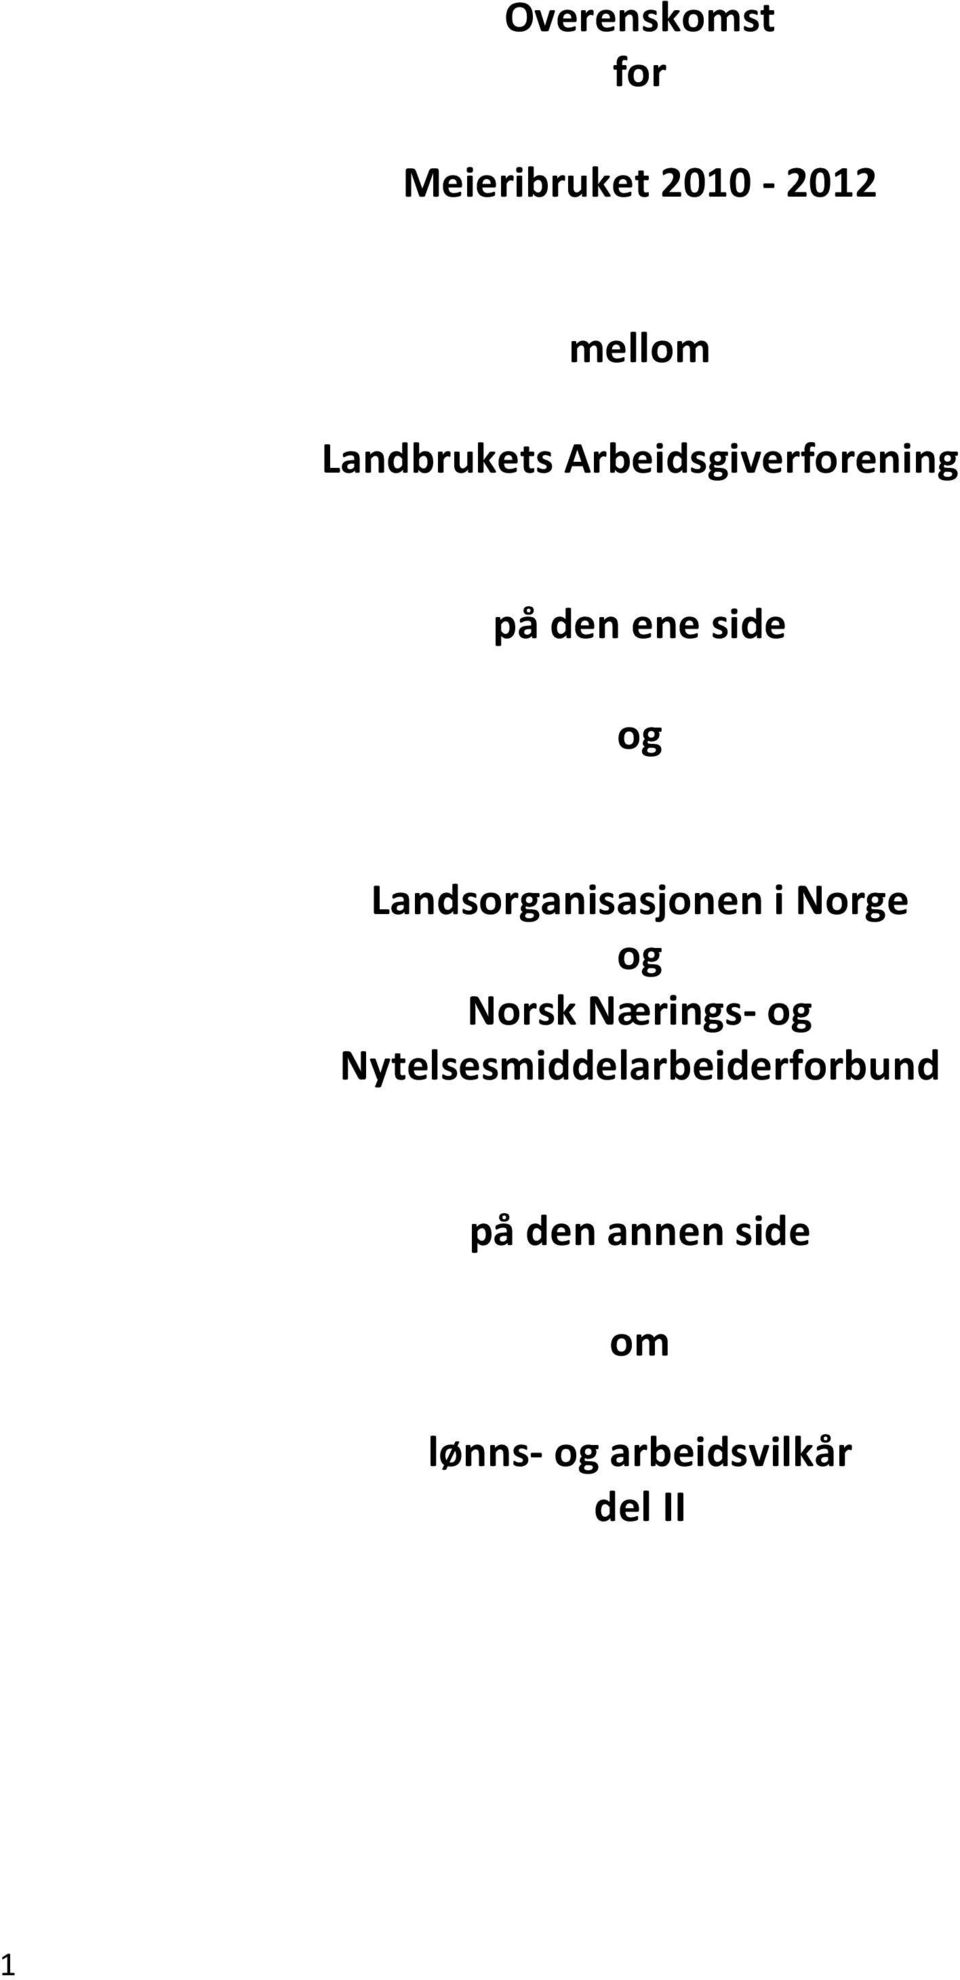 Landsorganisasjonen i Norge og Norsk Nærings- og